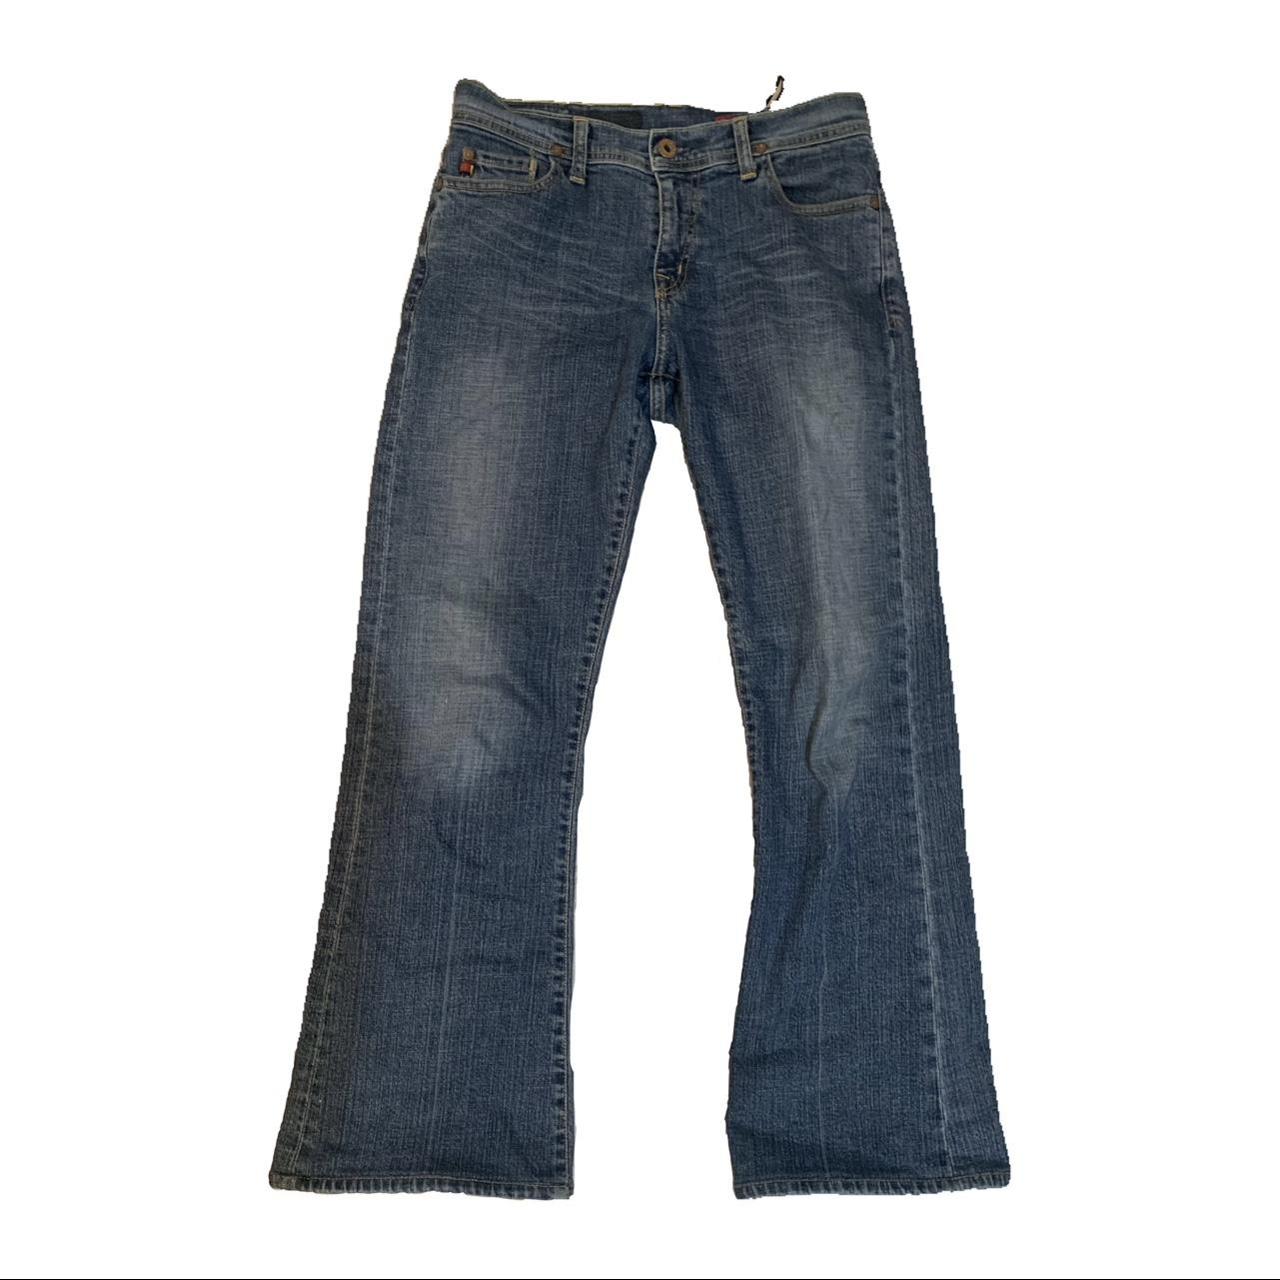 AG Jeans Men's Blue and Navy Jeans | Depop